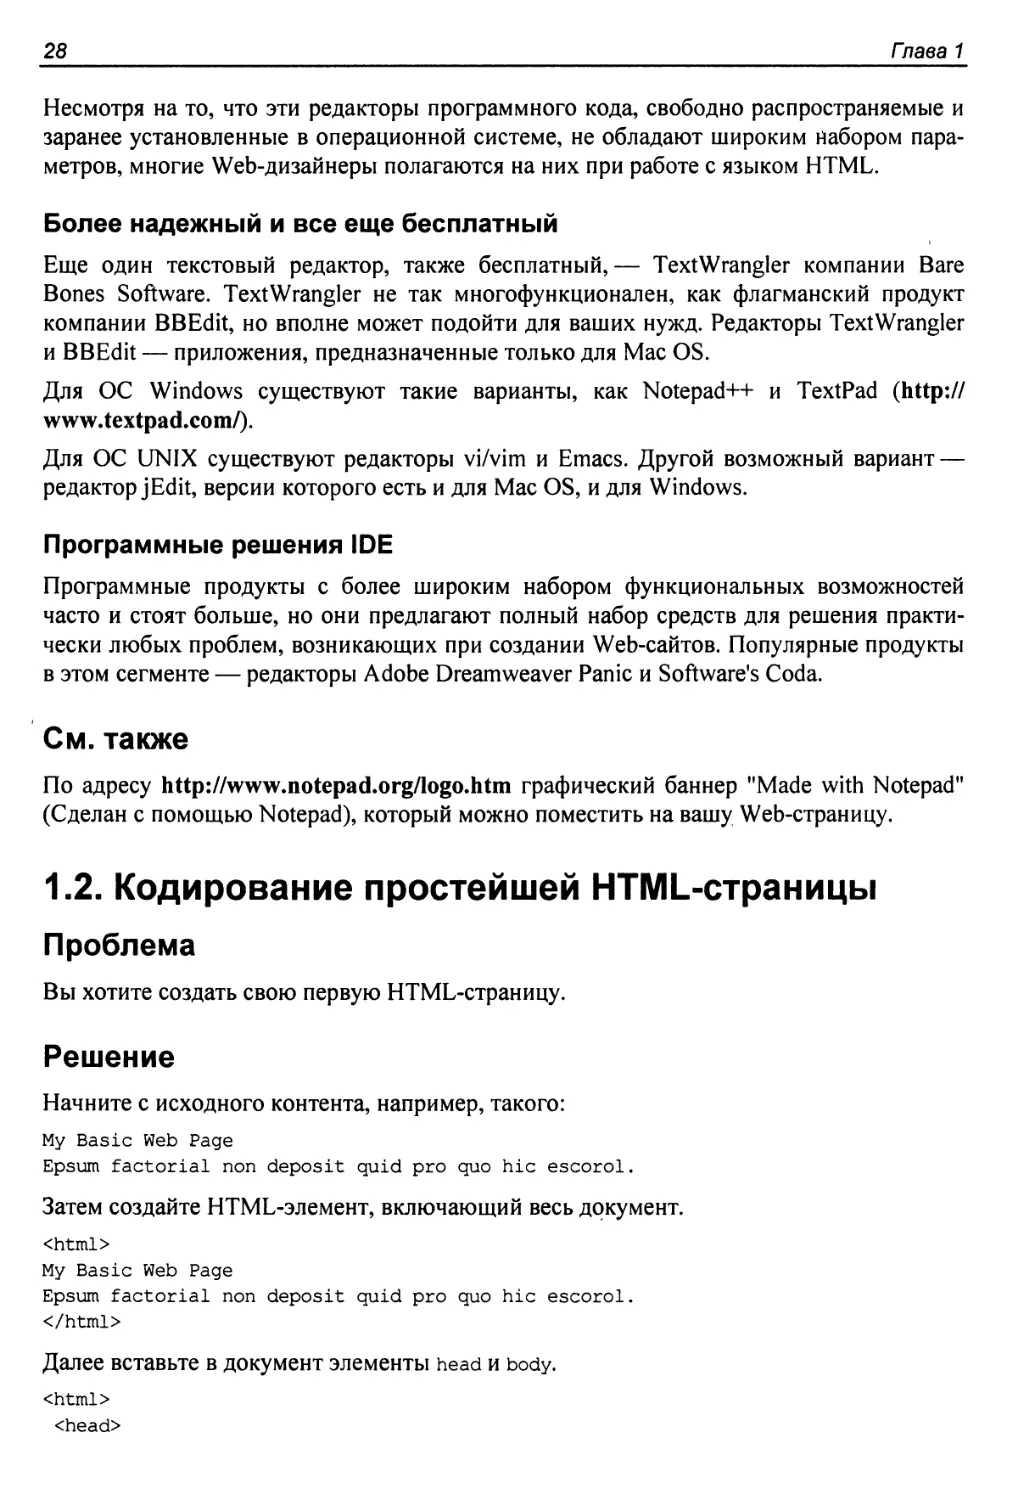 1.2. Кодирование простейшей HTML-страницы